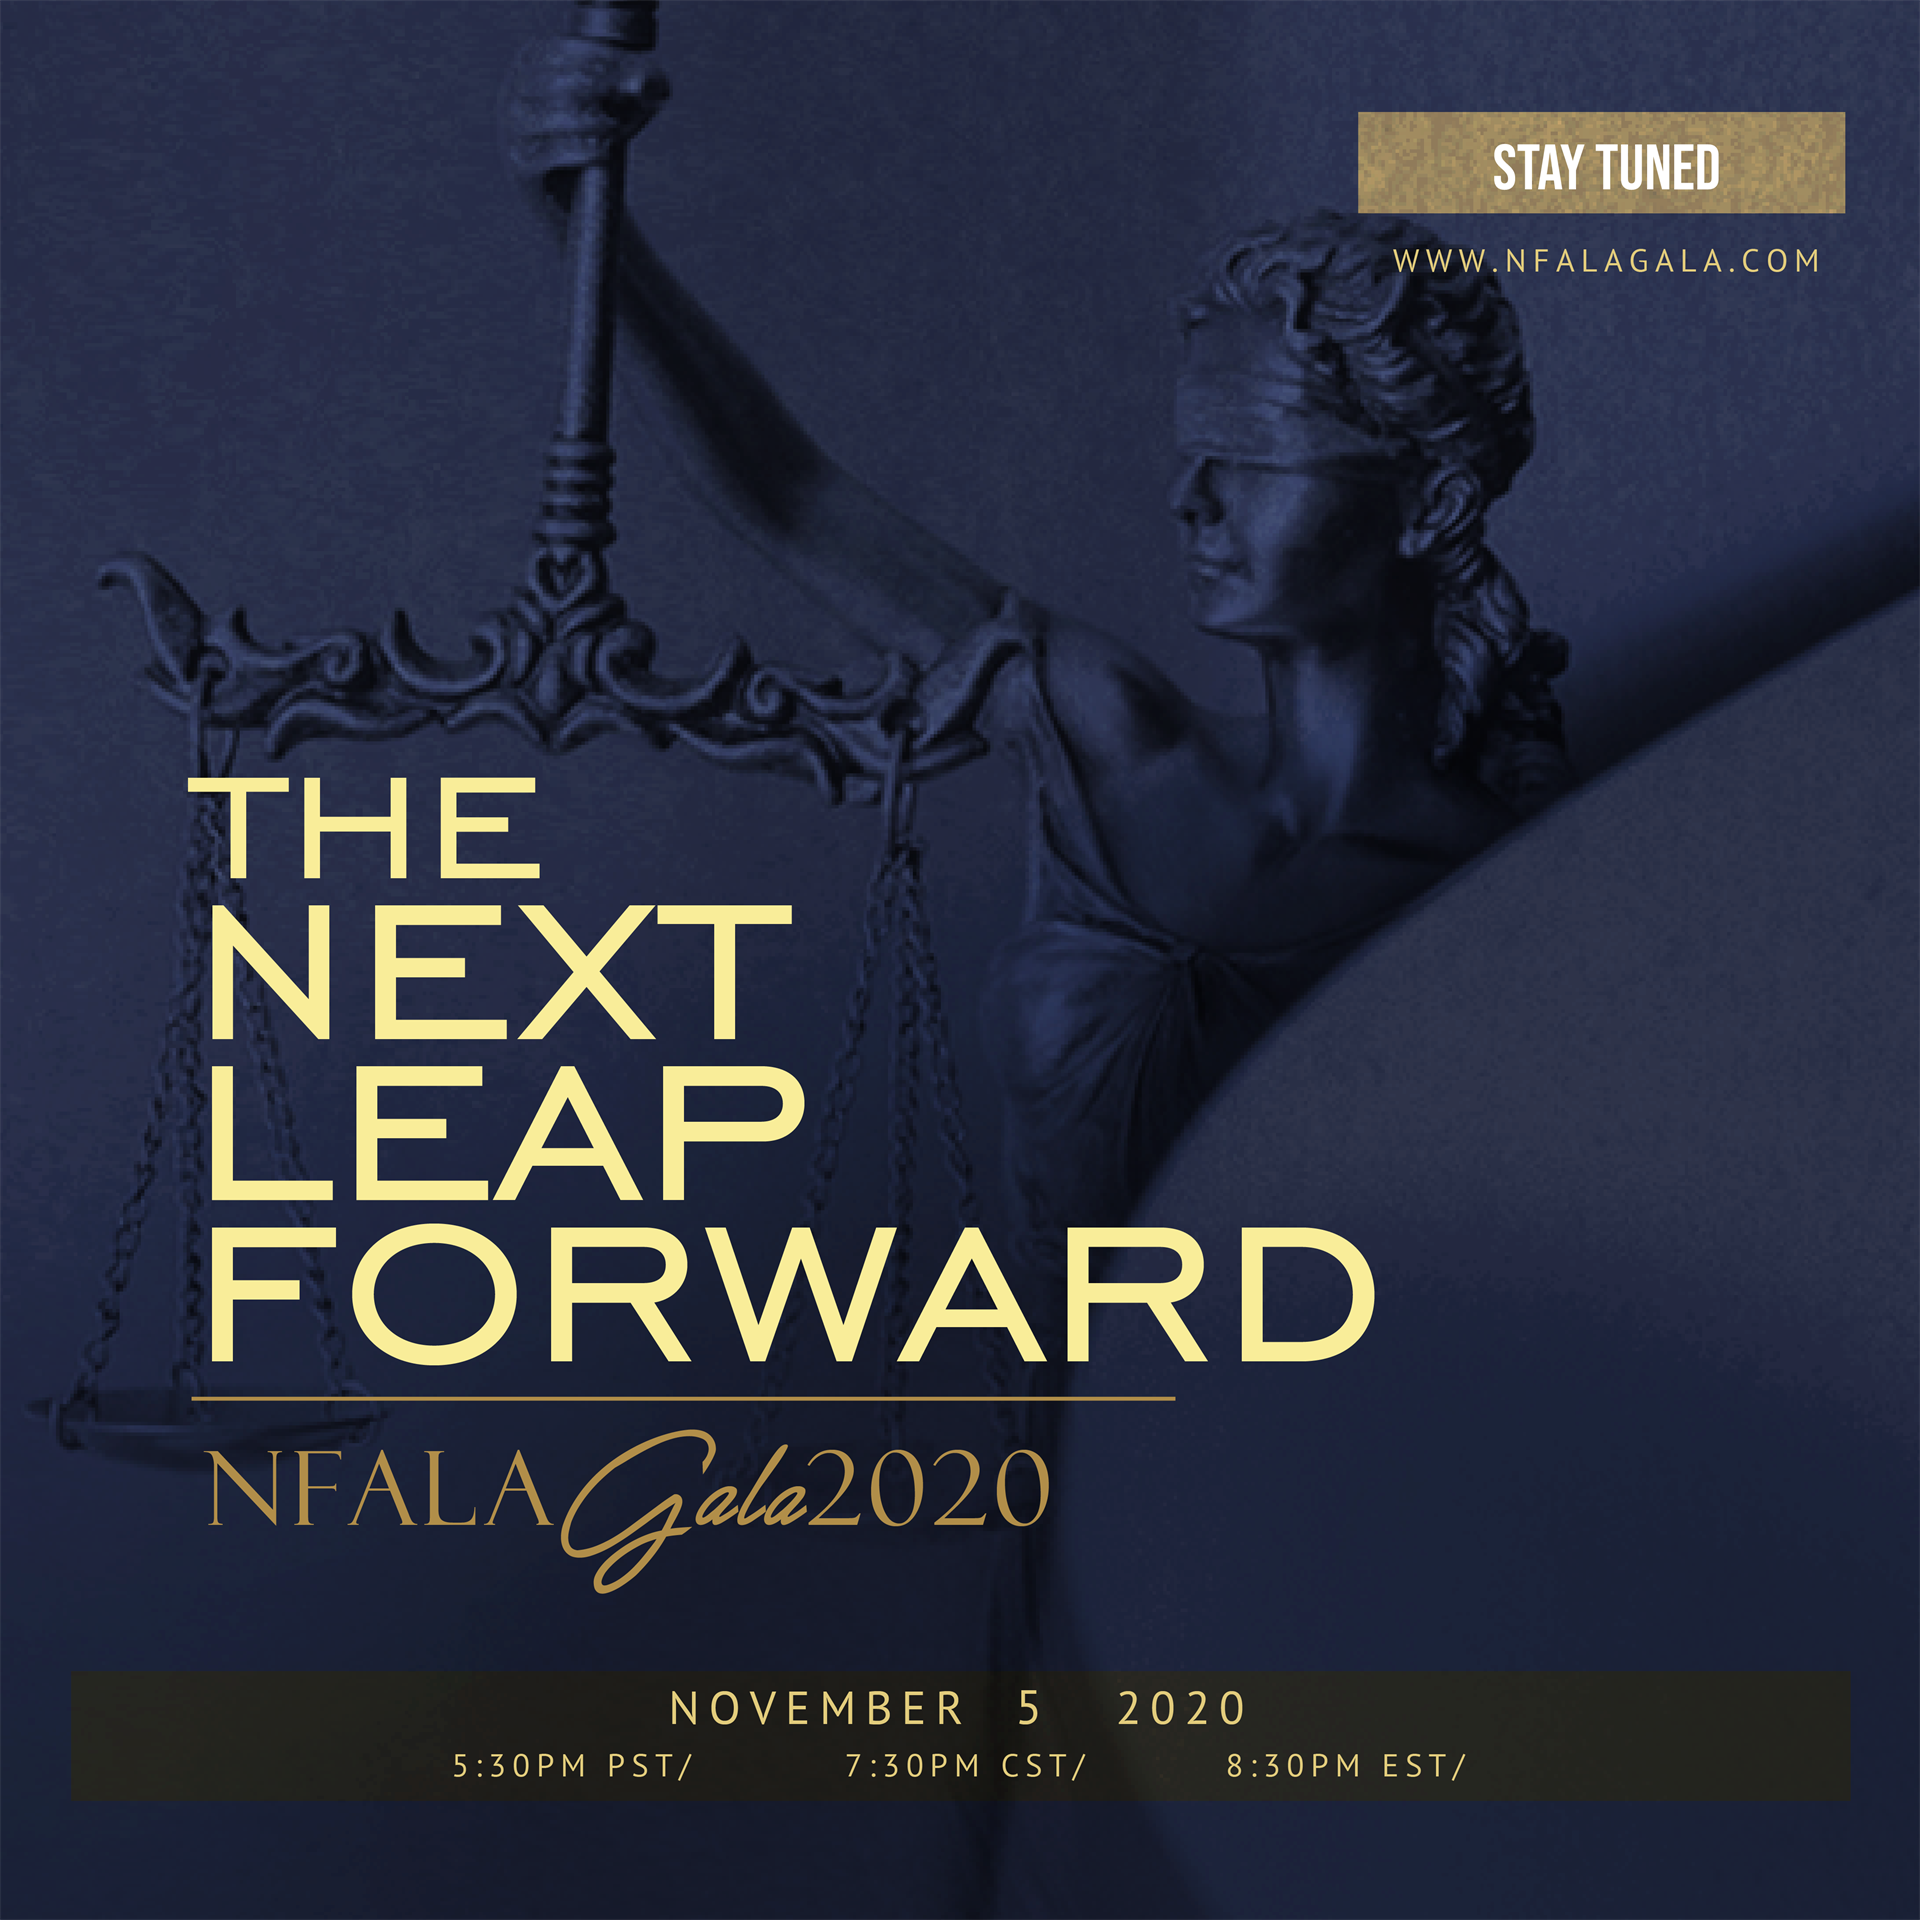 NFALA Gala 2020